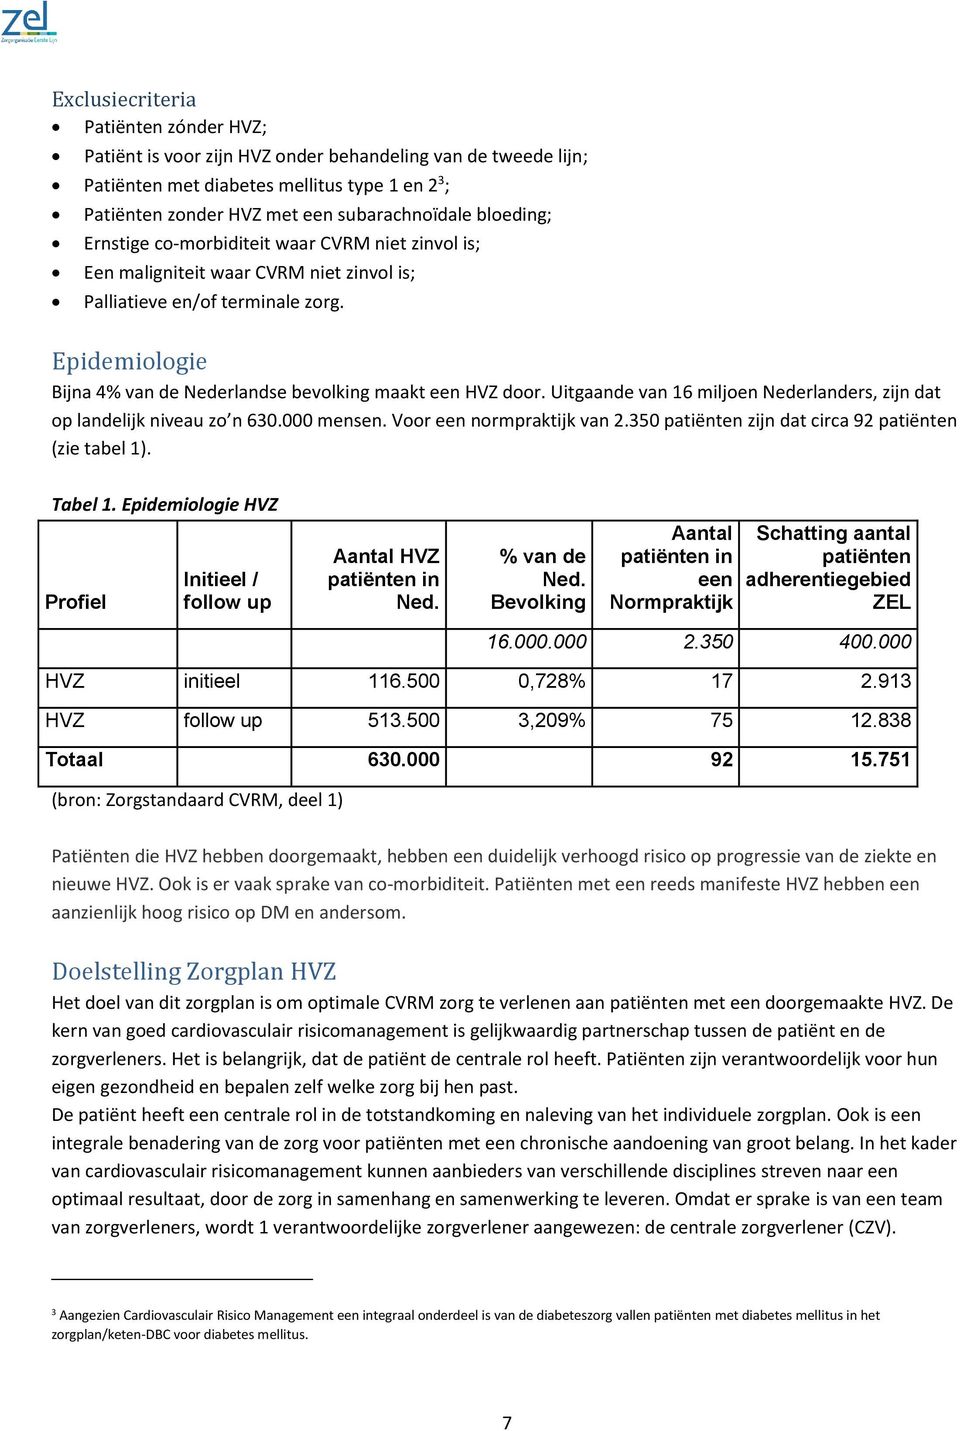 Epidemiologie Bijna 4% van de Nederlandse bevolking maakt een HVZ door. Uitgaande van 16 miljoen Nederlanders, zijn dat op landelijk niveau zo n 630.000 mensen. Voor een normpraktijk van 2.